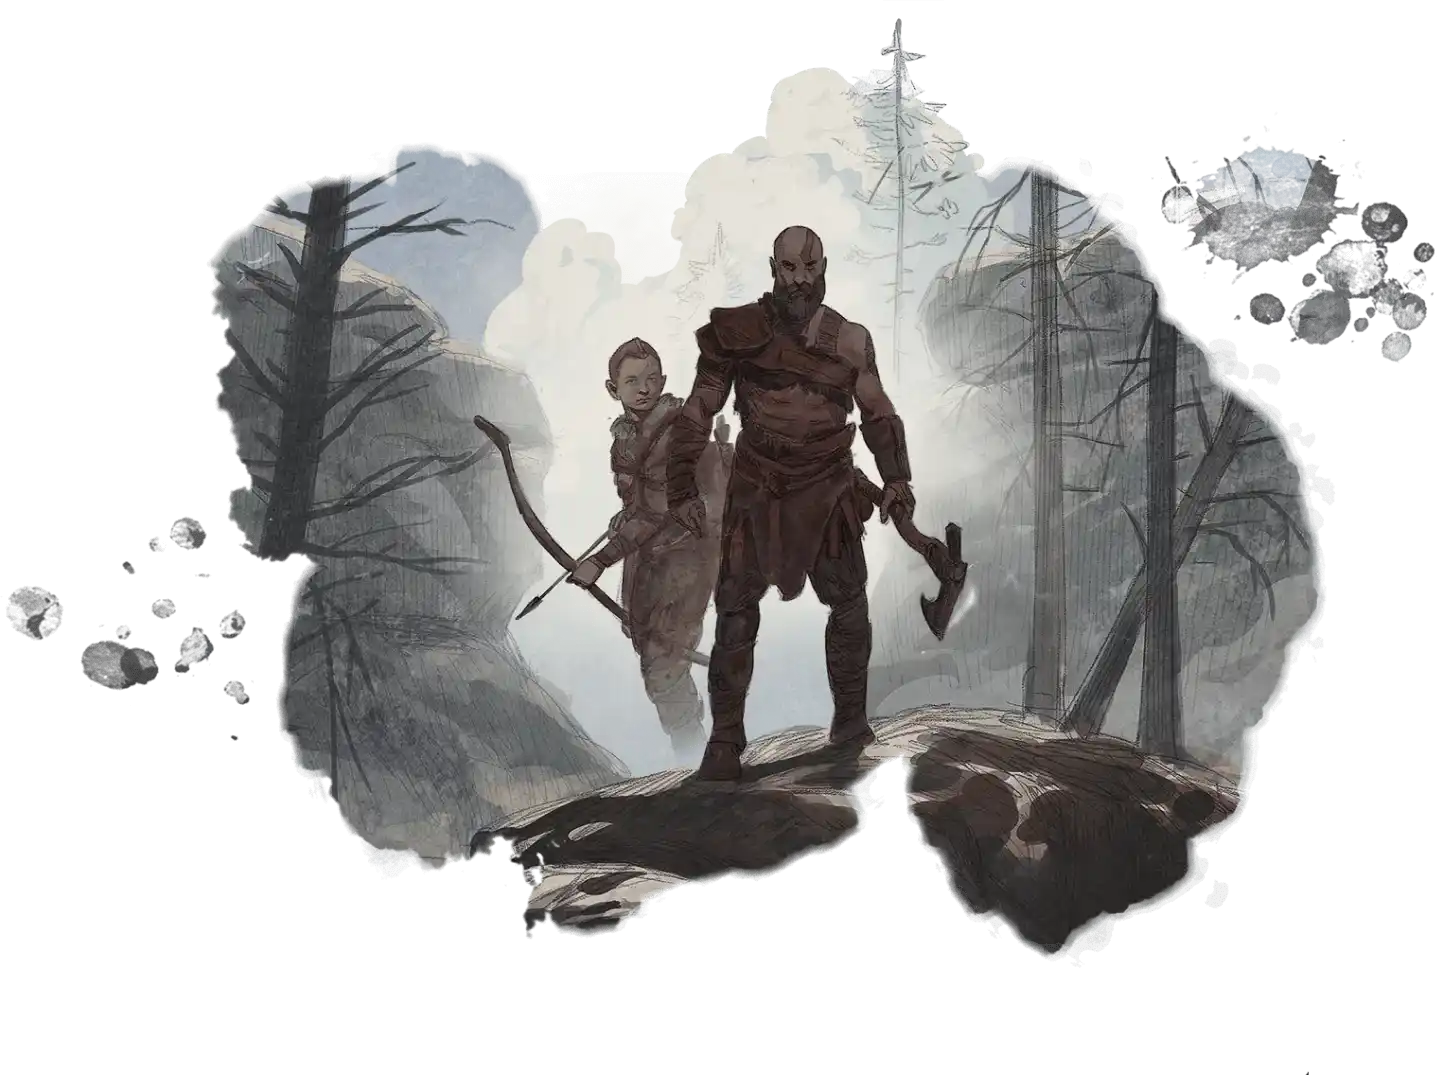 Kratos con un hacha y Atreus con una flecha, aventurando por la tierra